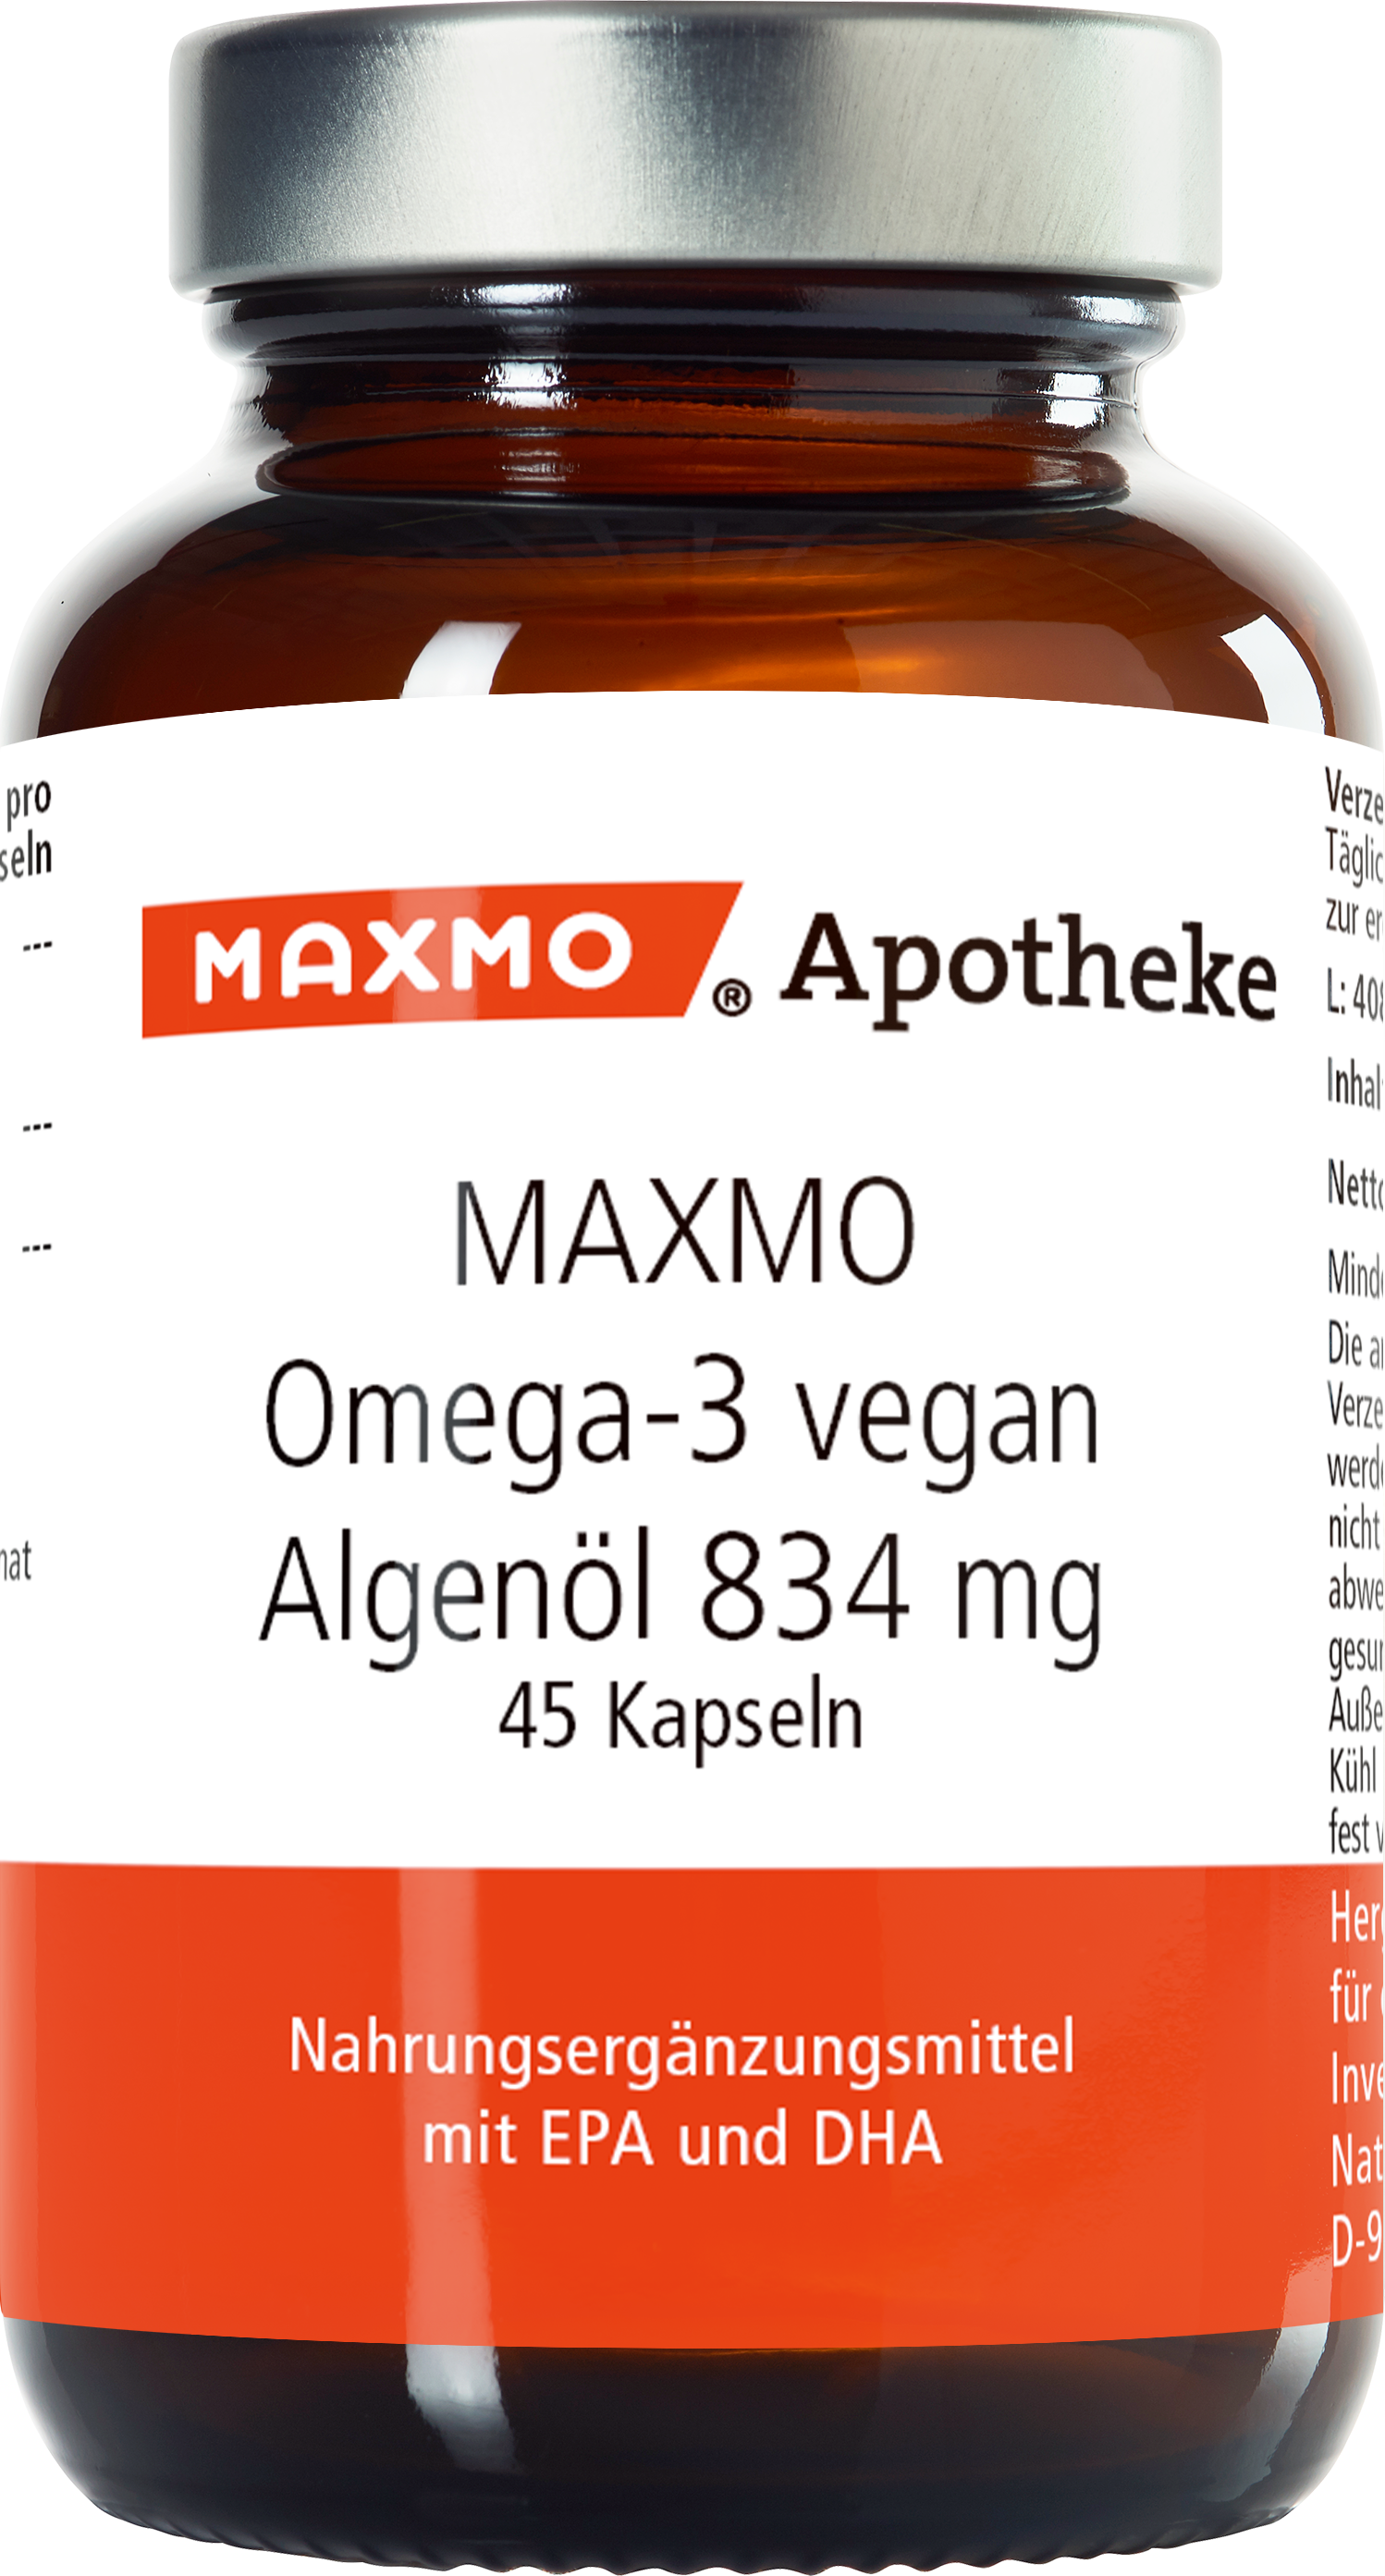 MAXMO Omega-3 vegan 834 mg Kapseln